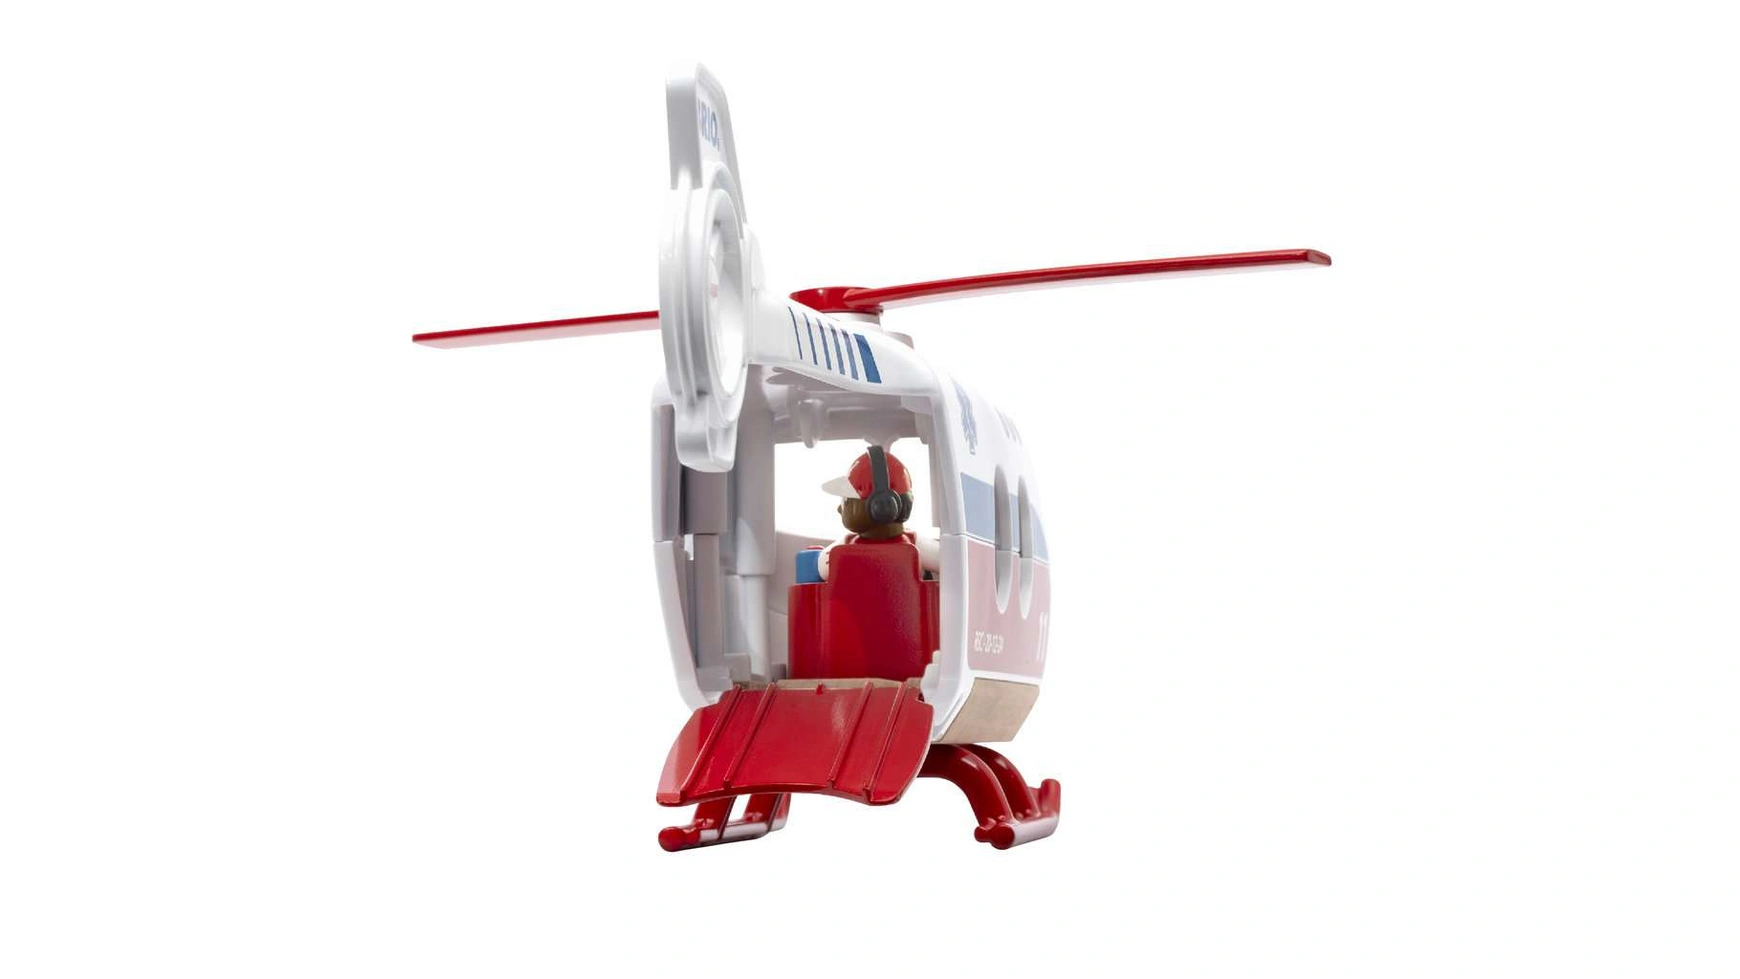 Brio Bahn Спасательный вертолет, рекомендуется детям от 3 лет и старше.